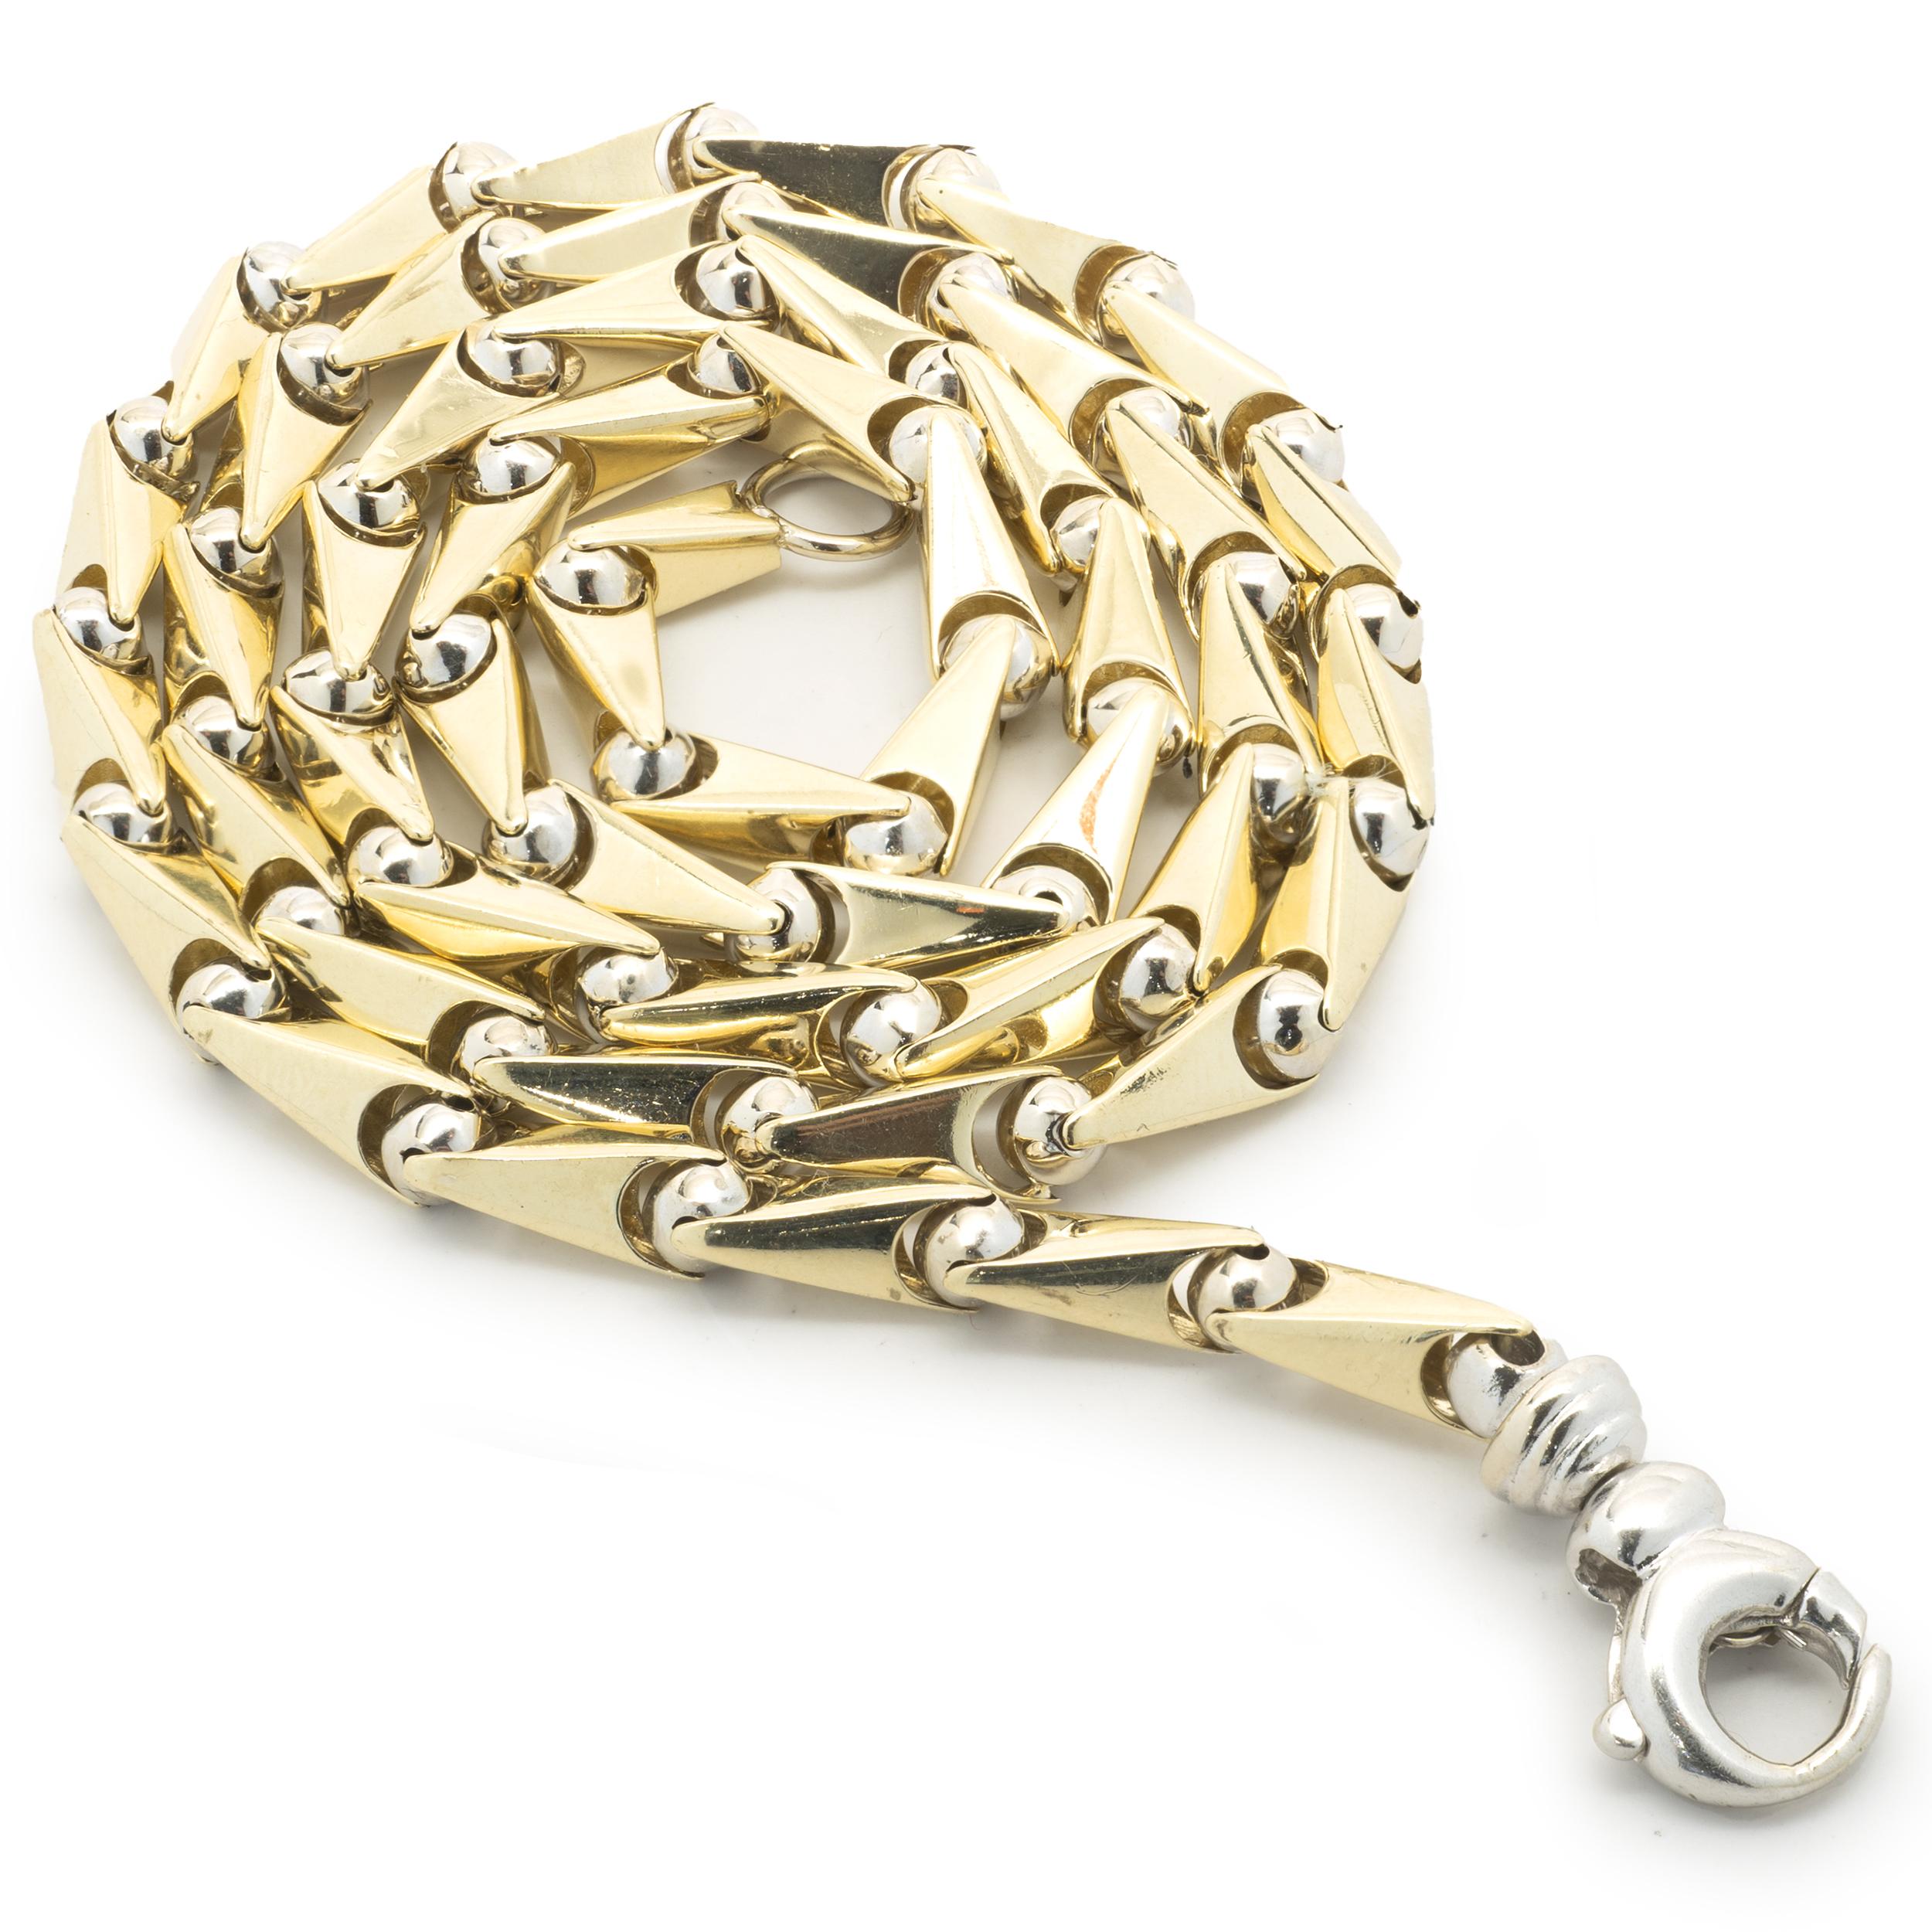 Matériau : or jaune et blanc 14K
Dimensions : le collier mesure 22 pouces de long et 4,85 mm de large
Poids : 31,64 grammes
